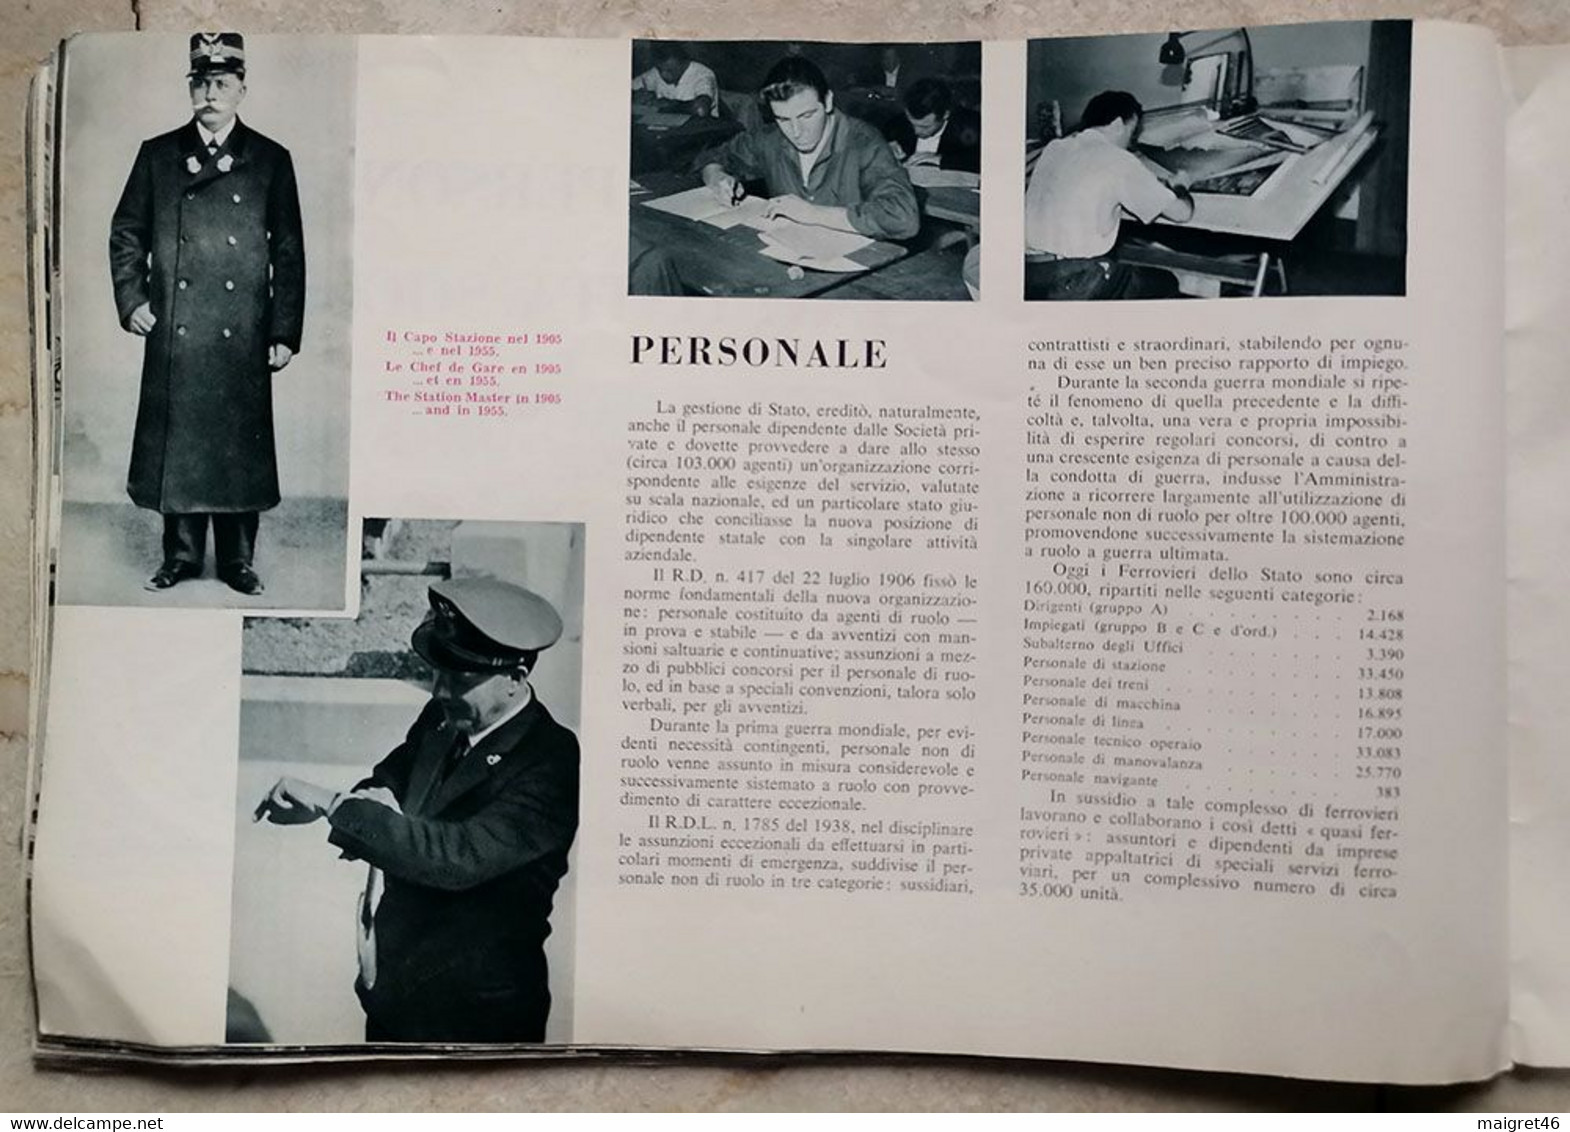 LE FERROVIE ITALIANE DELLO STATO EDIZIONE SPECIALE CINQUANTENARIO ANNO 1905 1955